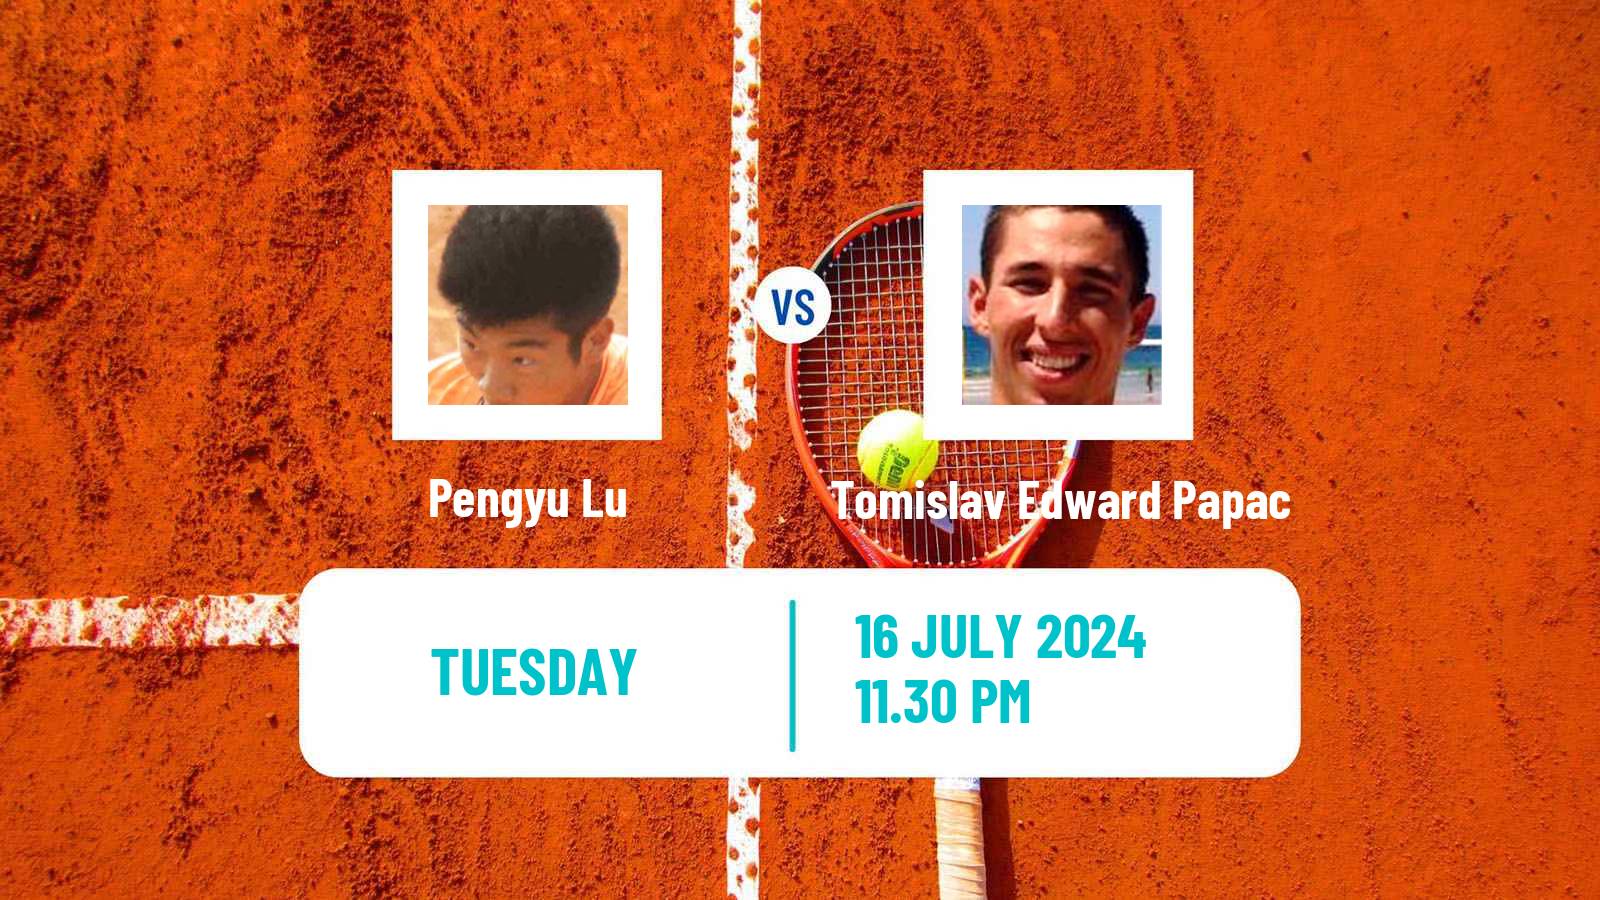 Tennis ITF M25 Tianjin 2 Men Pengyu Lu - Tomislav Edward Papac